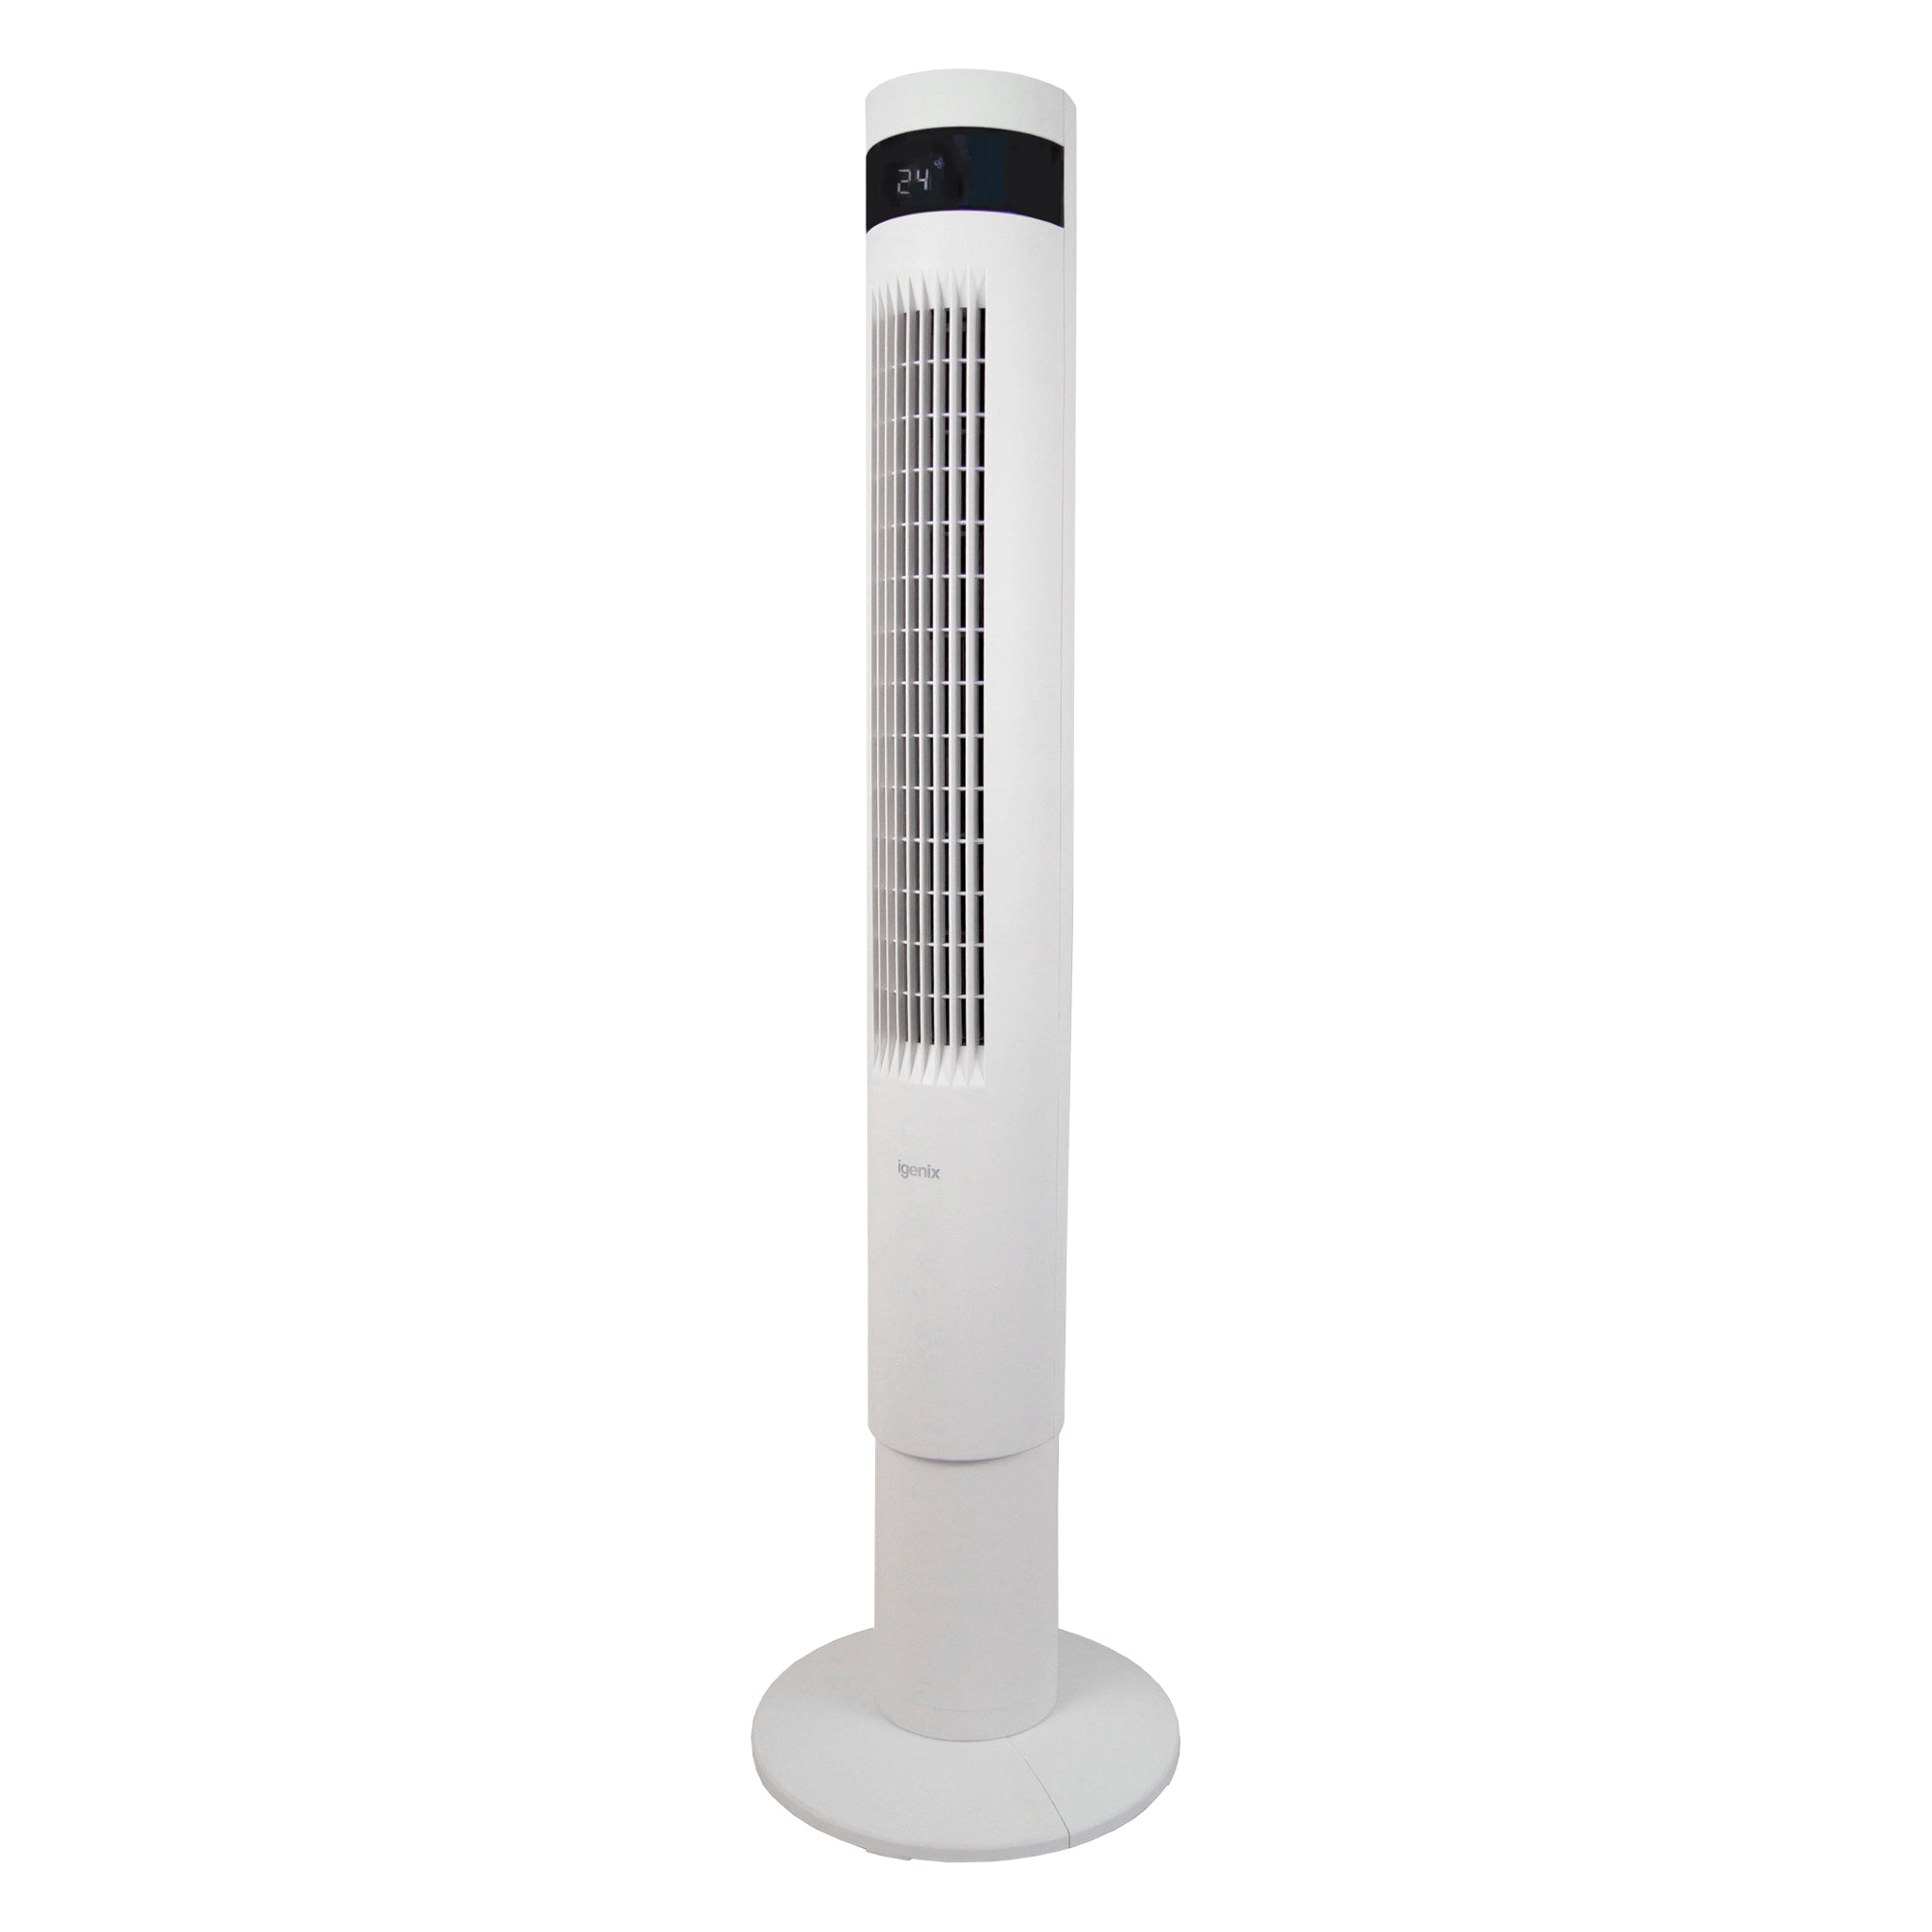 43 Inch Digital Tower Fan, 3 Speed Settings, White